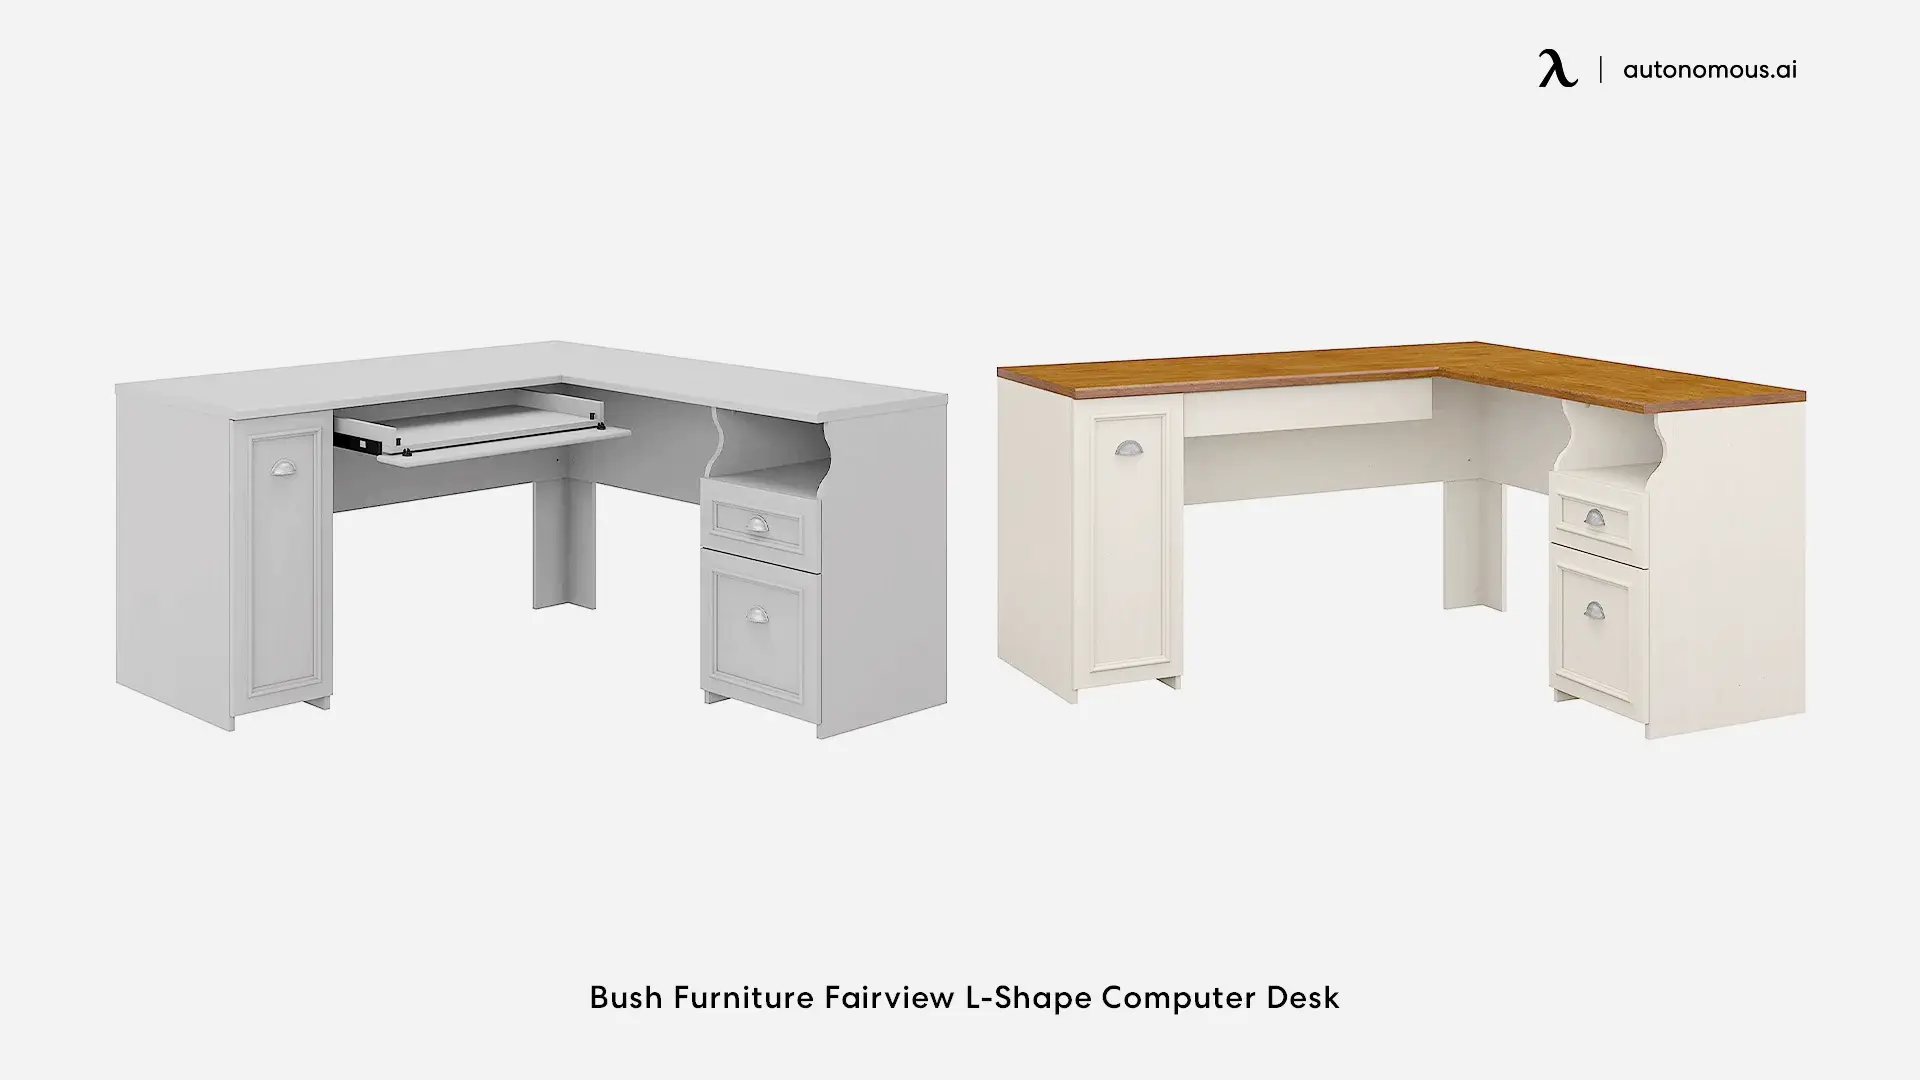 Fairview L-Shaped Desk by Bush Furniture